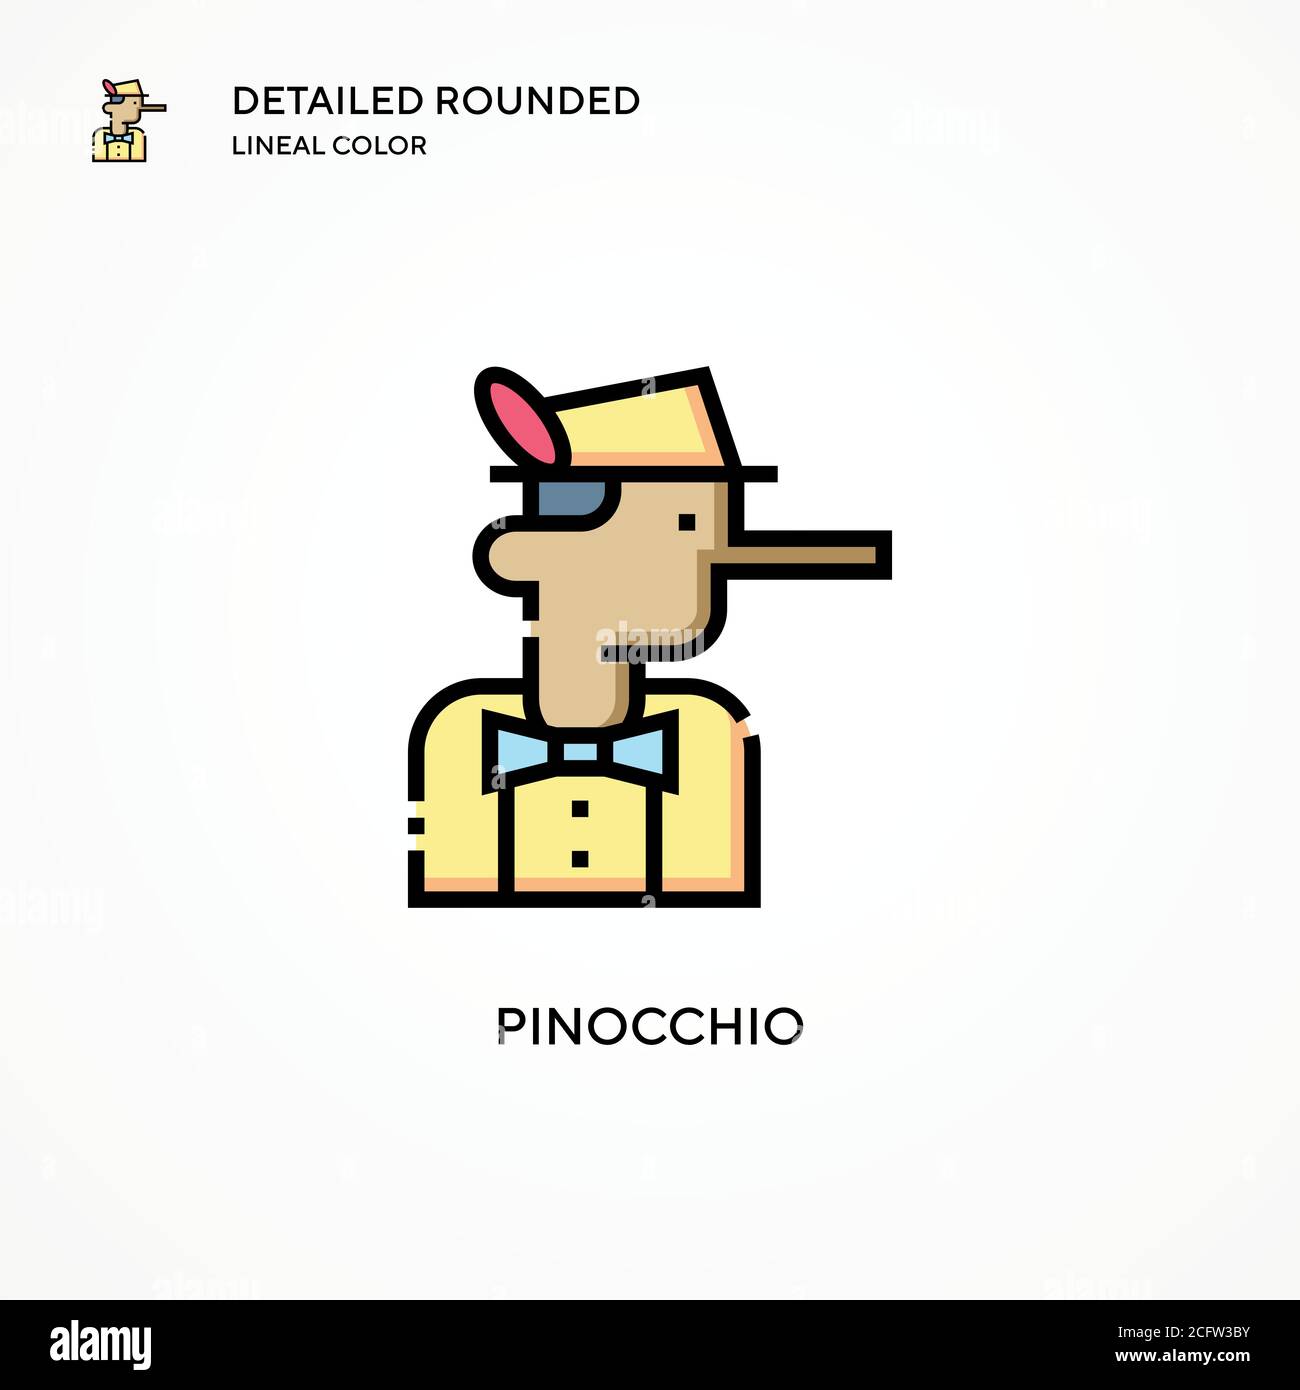 Pinocchio Vektor-Symbol. Moderne Vektorgrafik Konzepte. Einfach zu bearbeiten und anzupassen. Stock Vektor